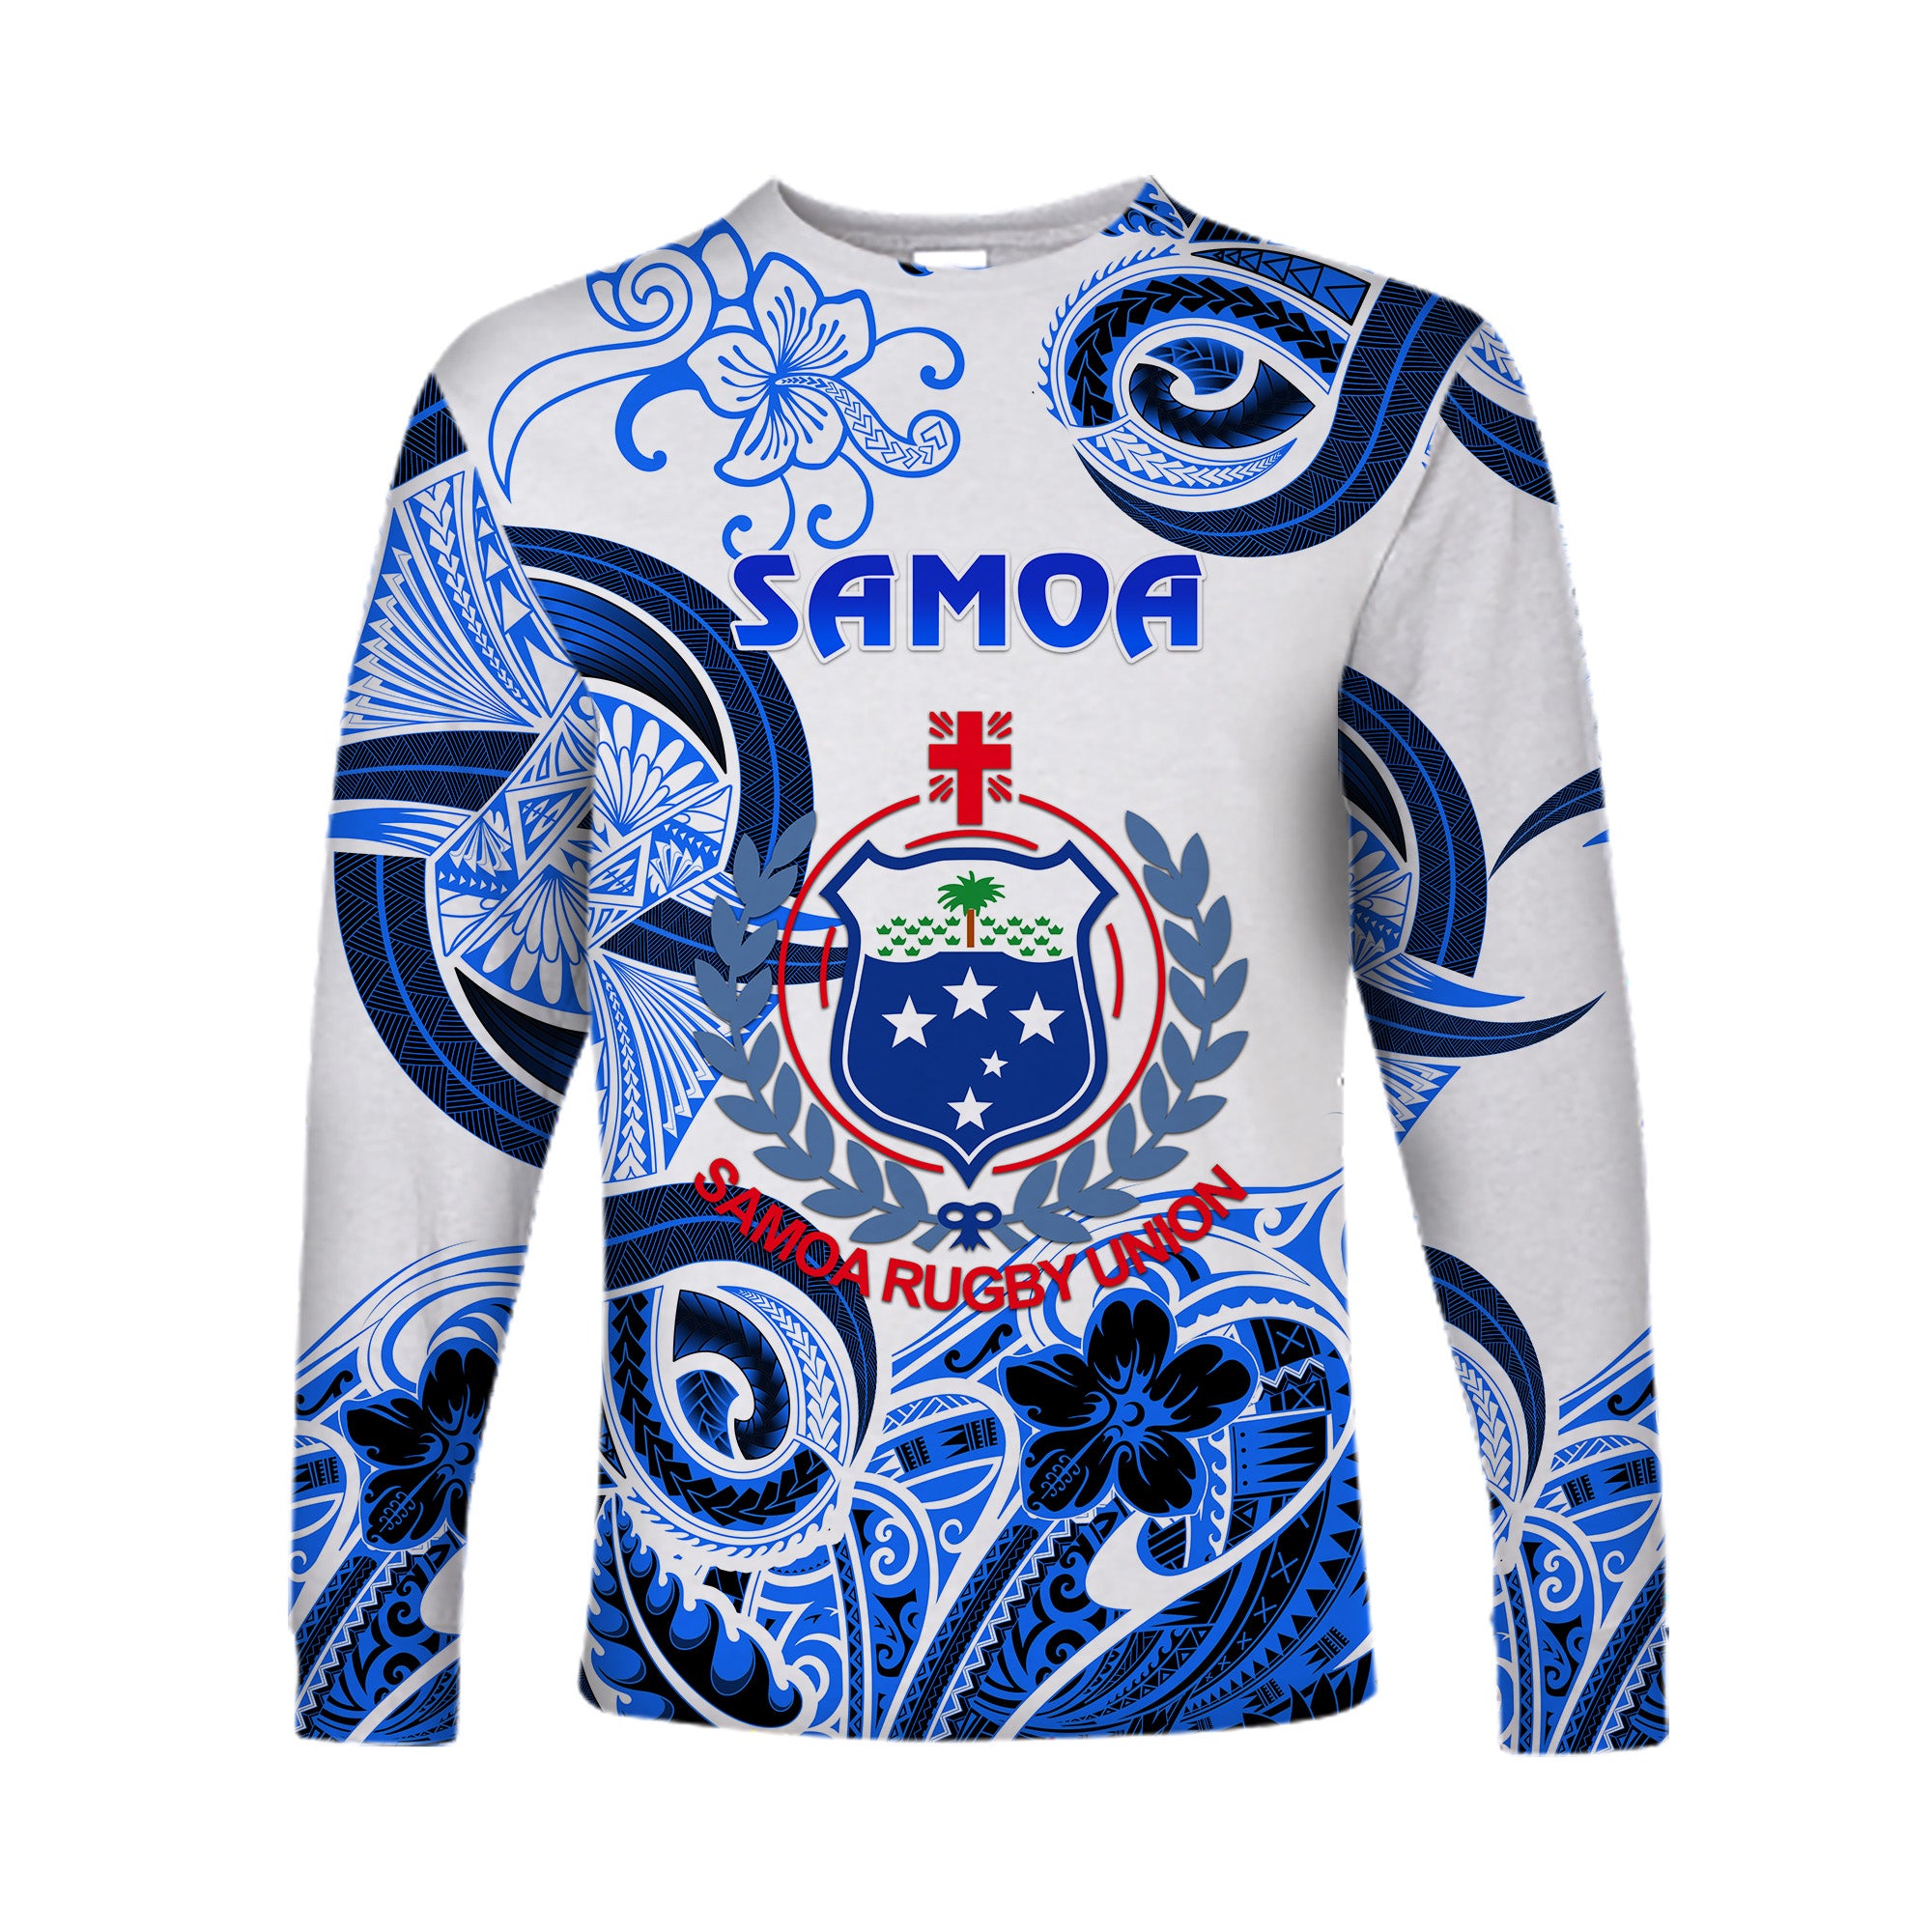 (Custom Personalised) Samoa Manu Long Sleeve Shirt Rugby Unique Style - White LT8 Unisex Blue - Polynesian Pride